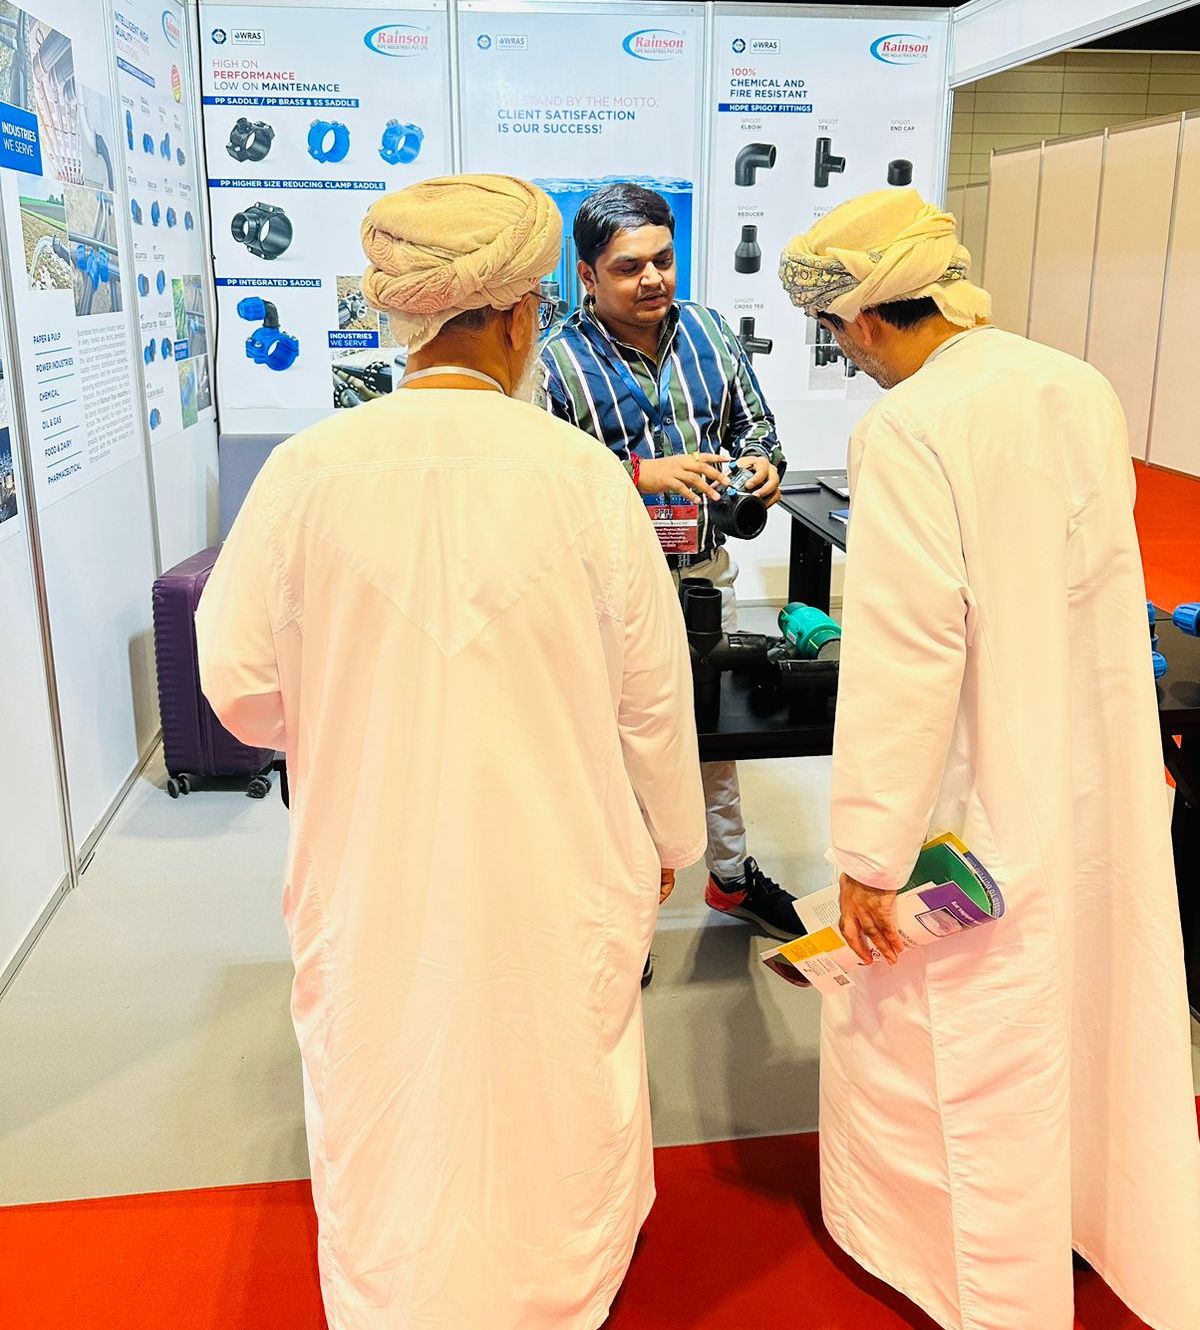 Oman Plast 2023 Exhibition Photo